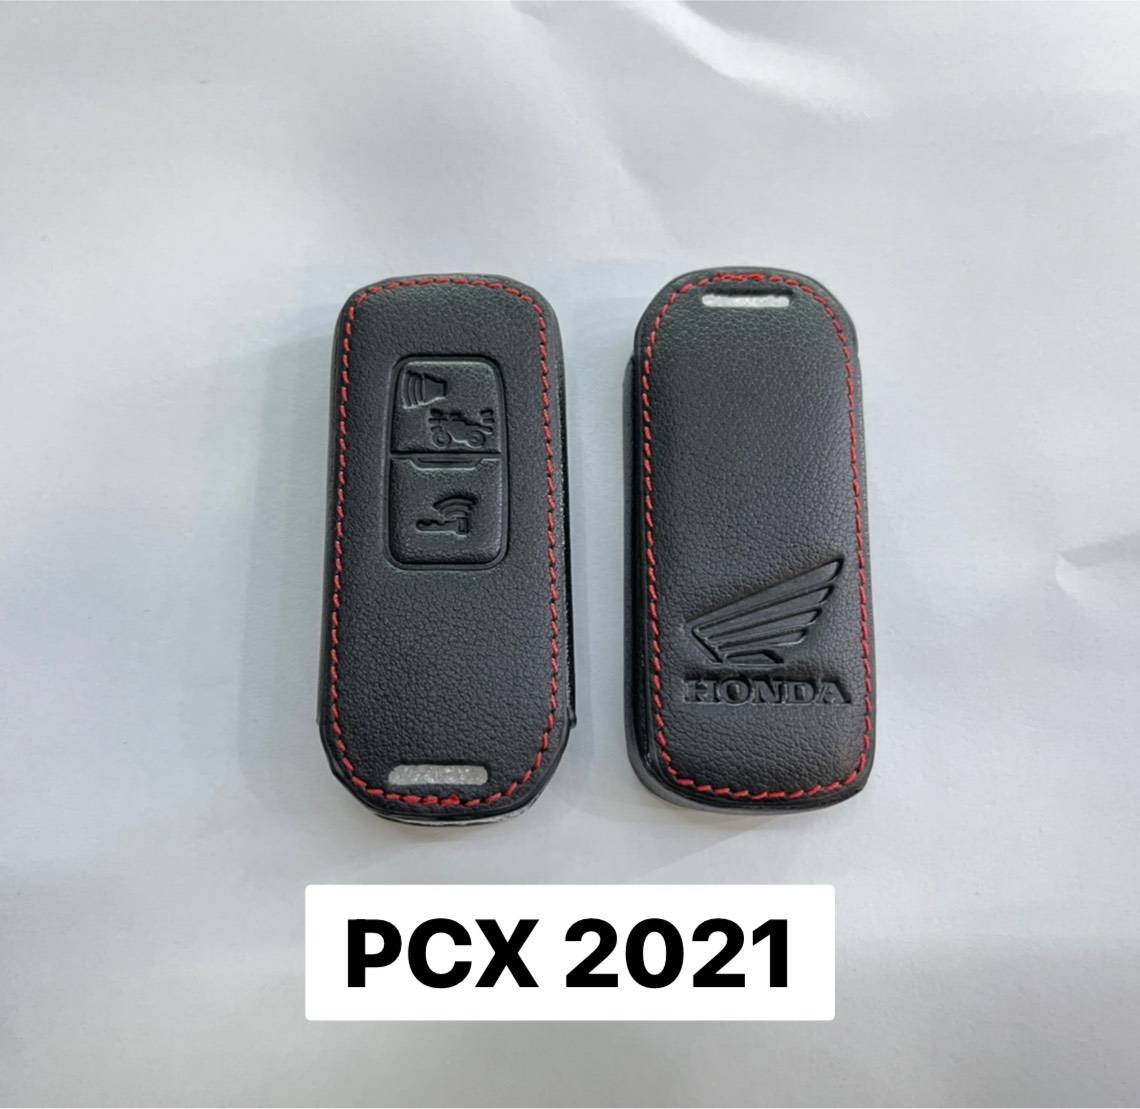 ซิลิโคน ซองหนังรีโมท PCX2021 PCX160 รุ่นใหม่ล่าสุด